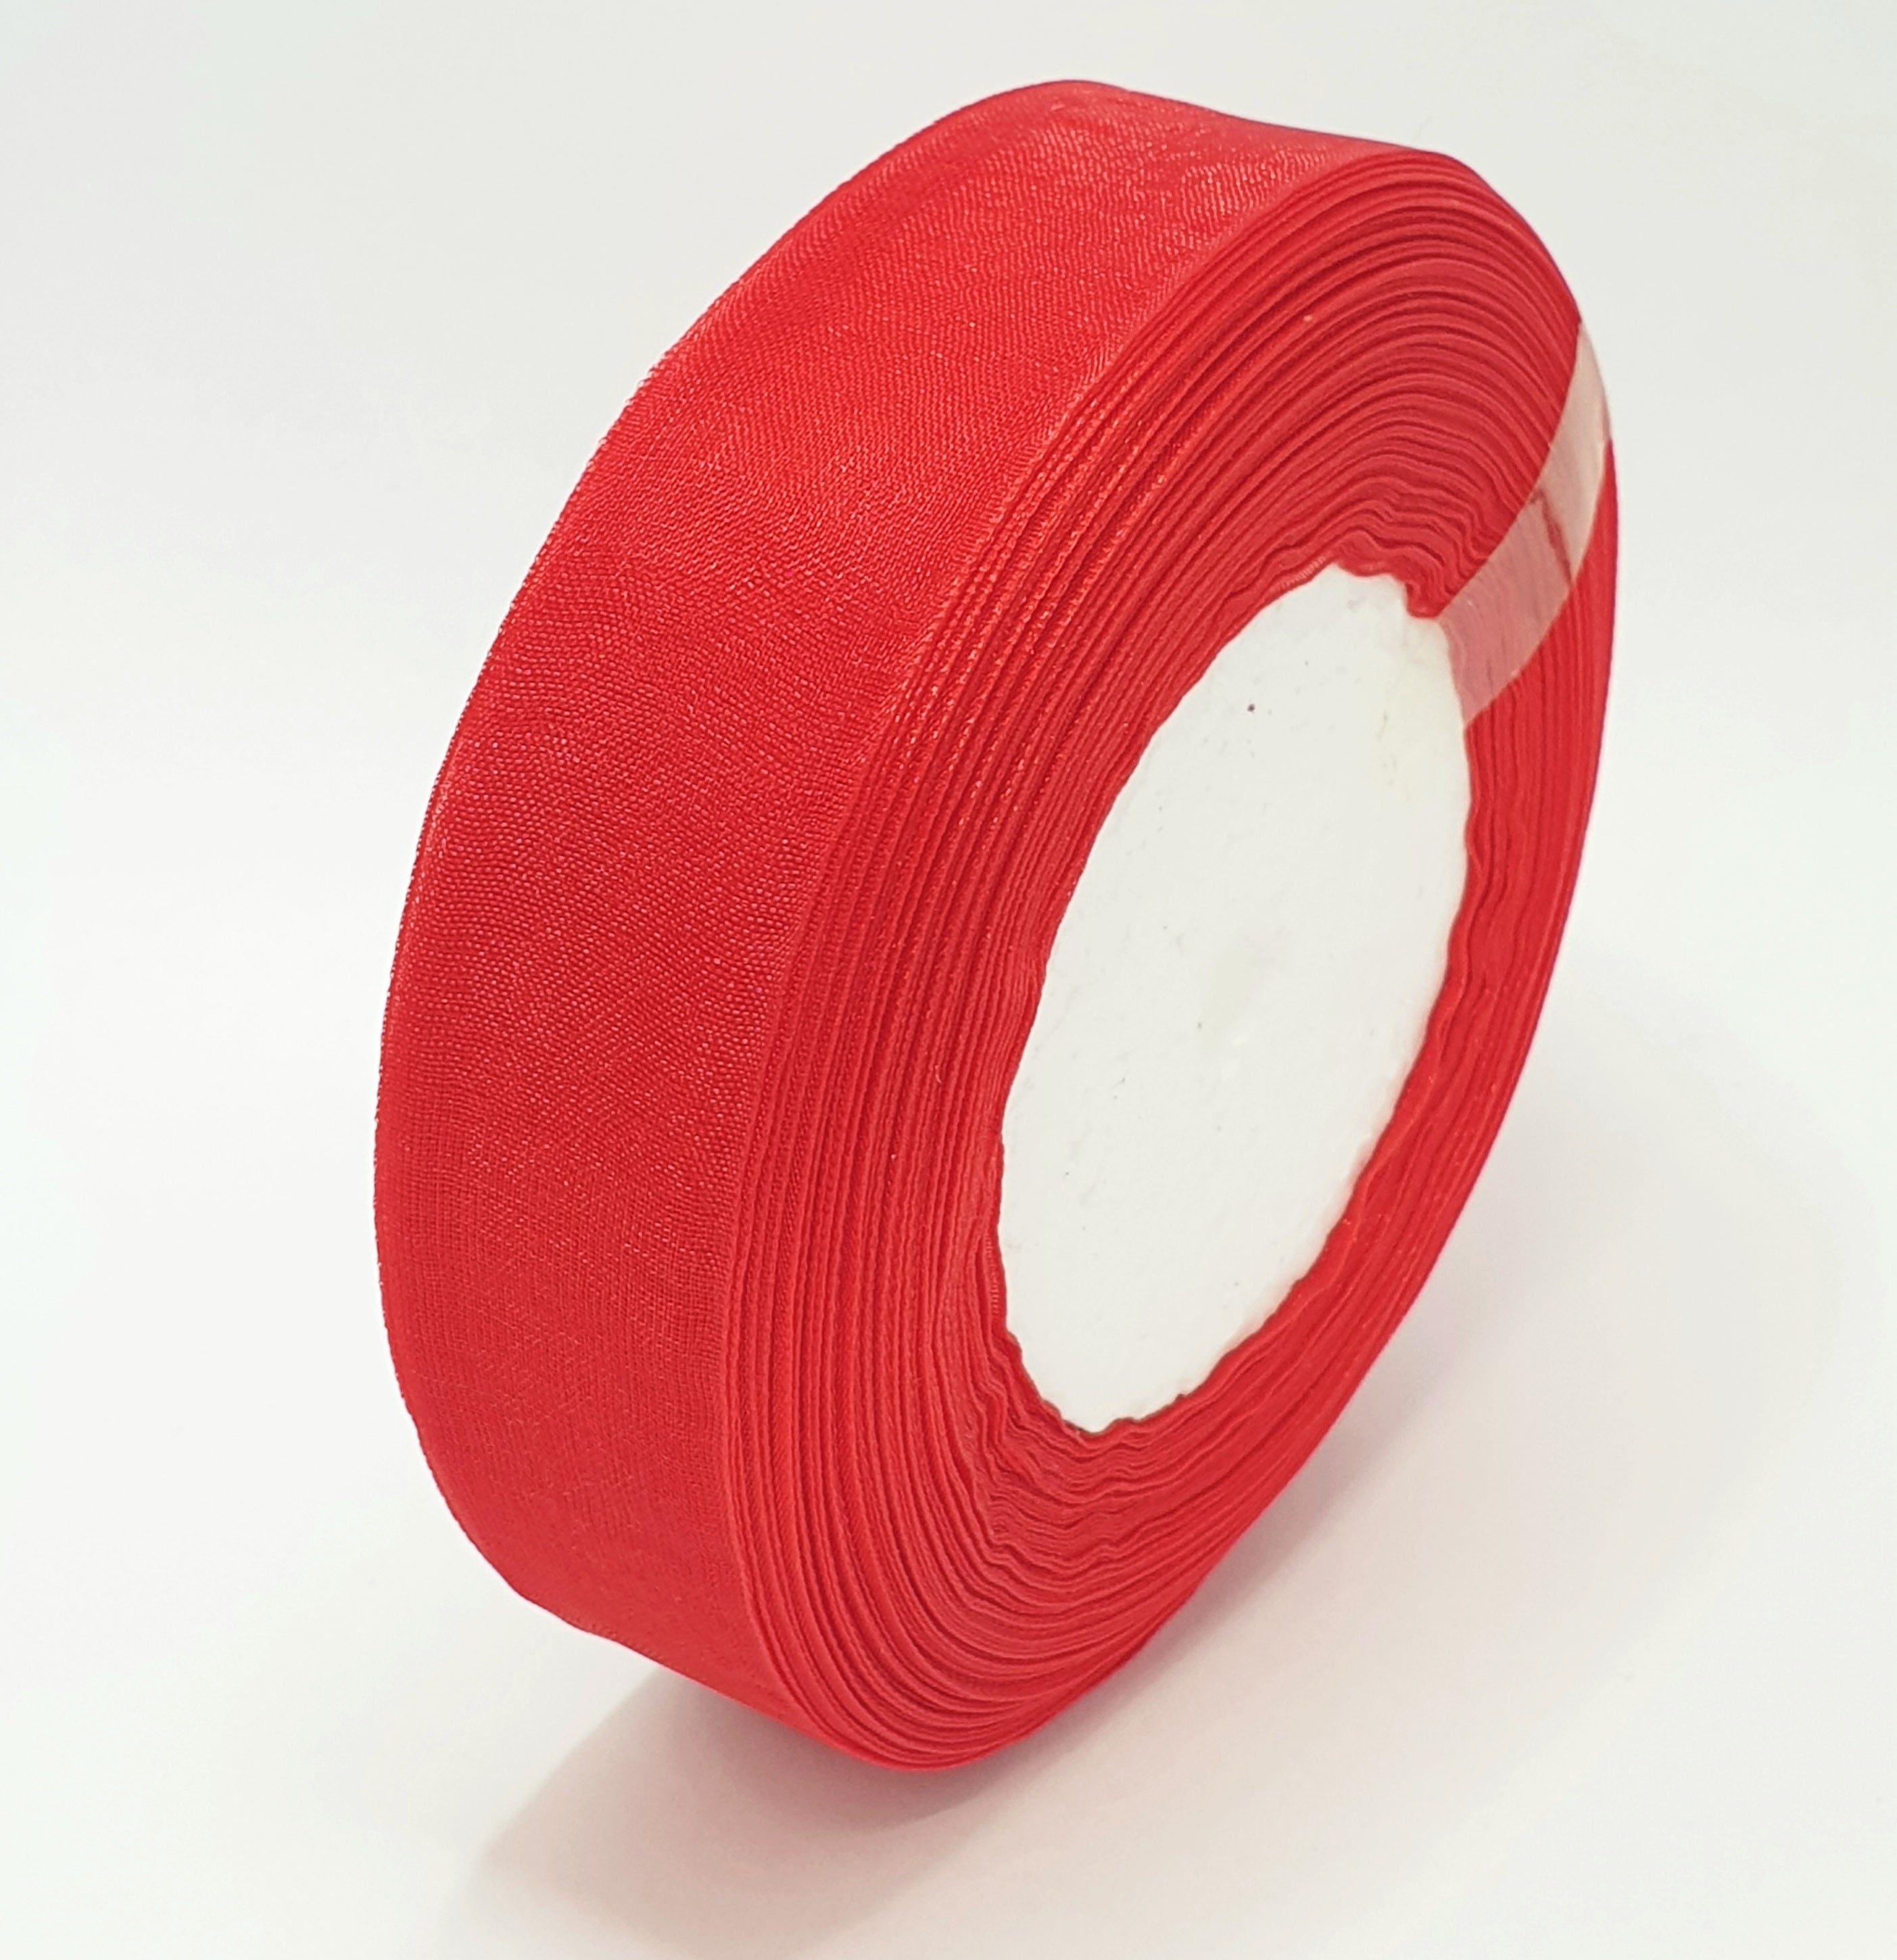 MajorCrafts 25mm 45metres Sheer Organza Fabric Ribbon Roll Red Shade R1026